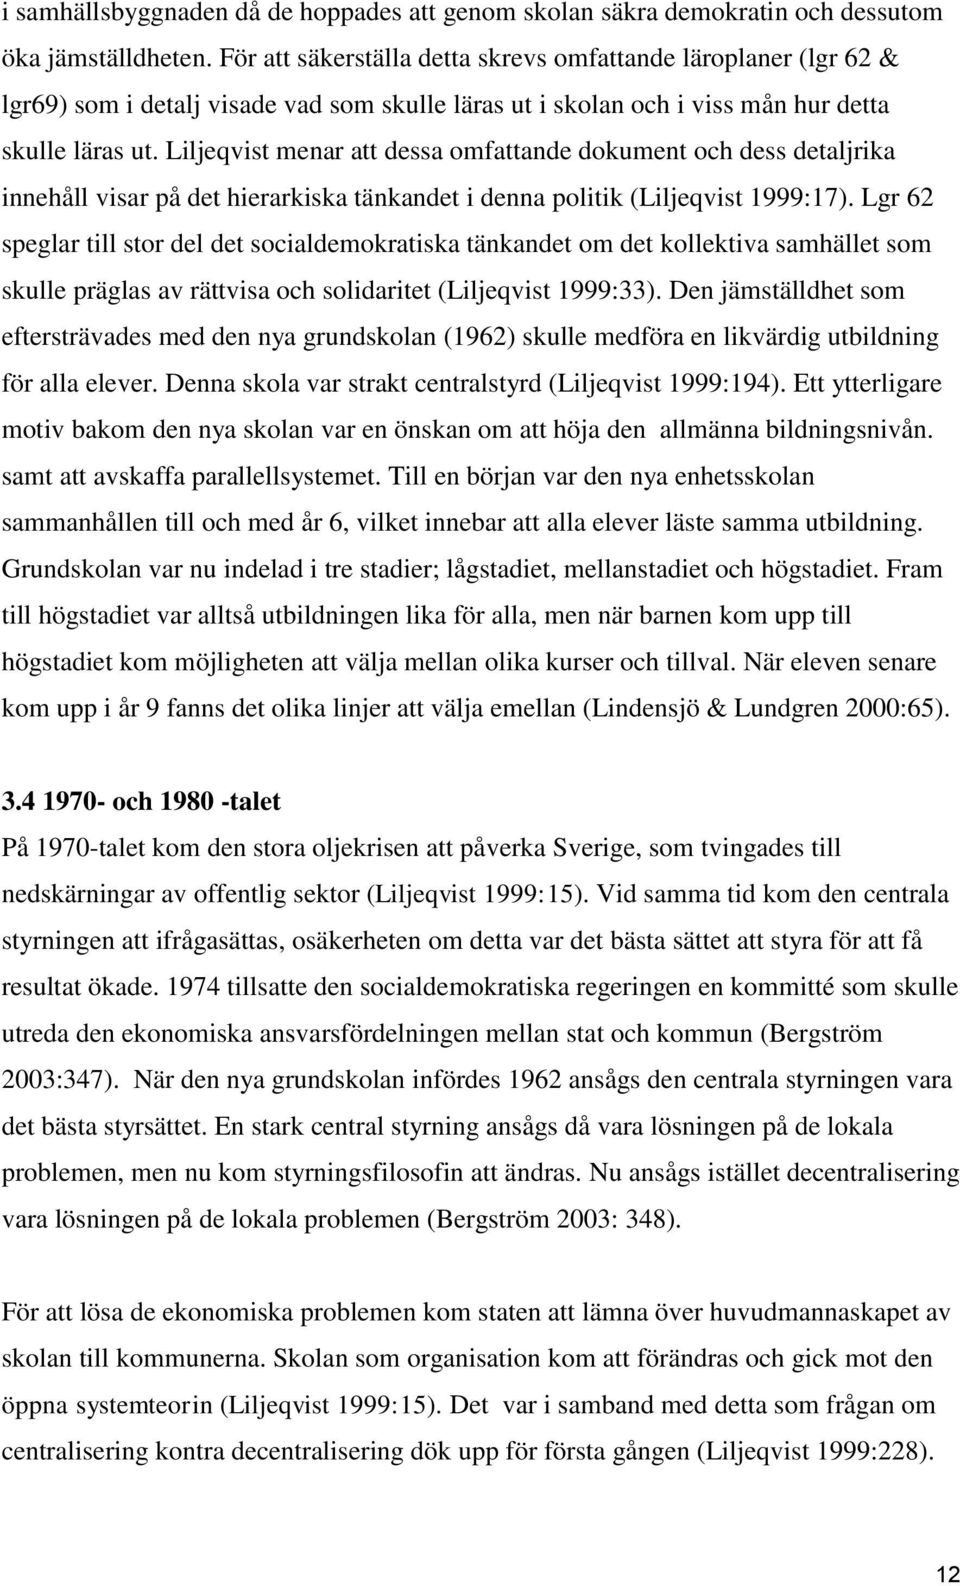 Liljeqvist menar att dessa omfattande dokument och dess detaljrika innehåll visar på det hierarkiska tänkandet i denna politik (Liljeqvist 1999:17).